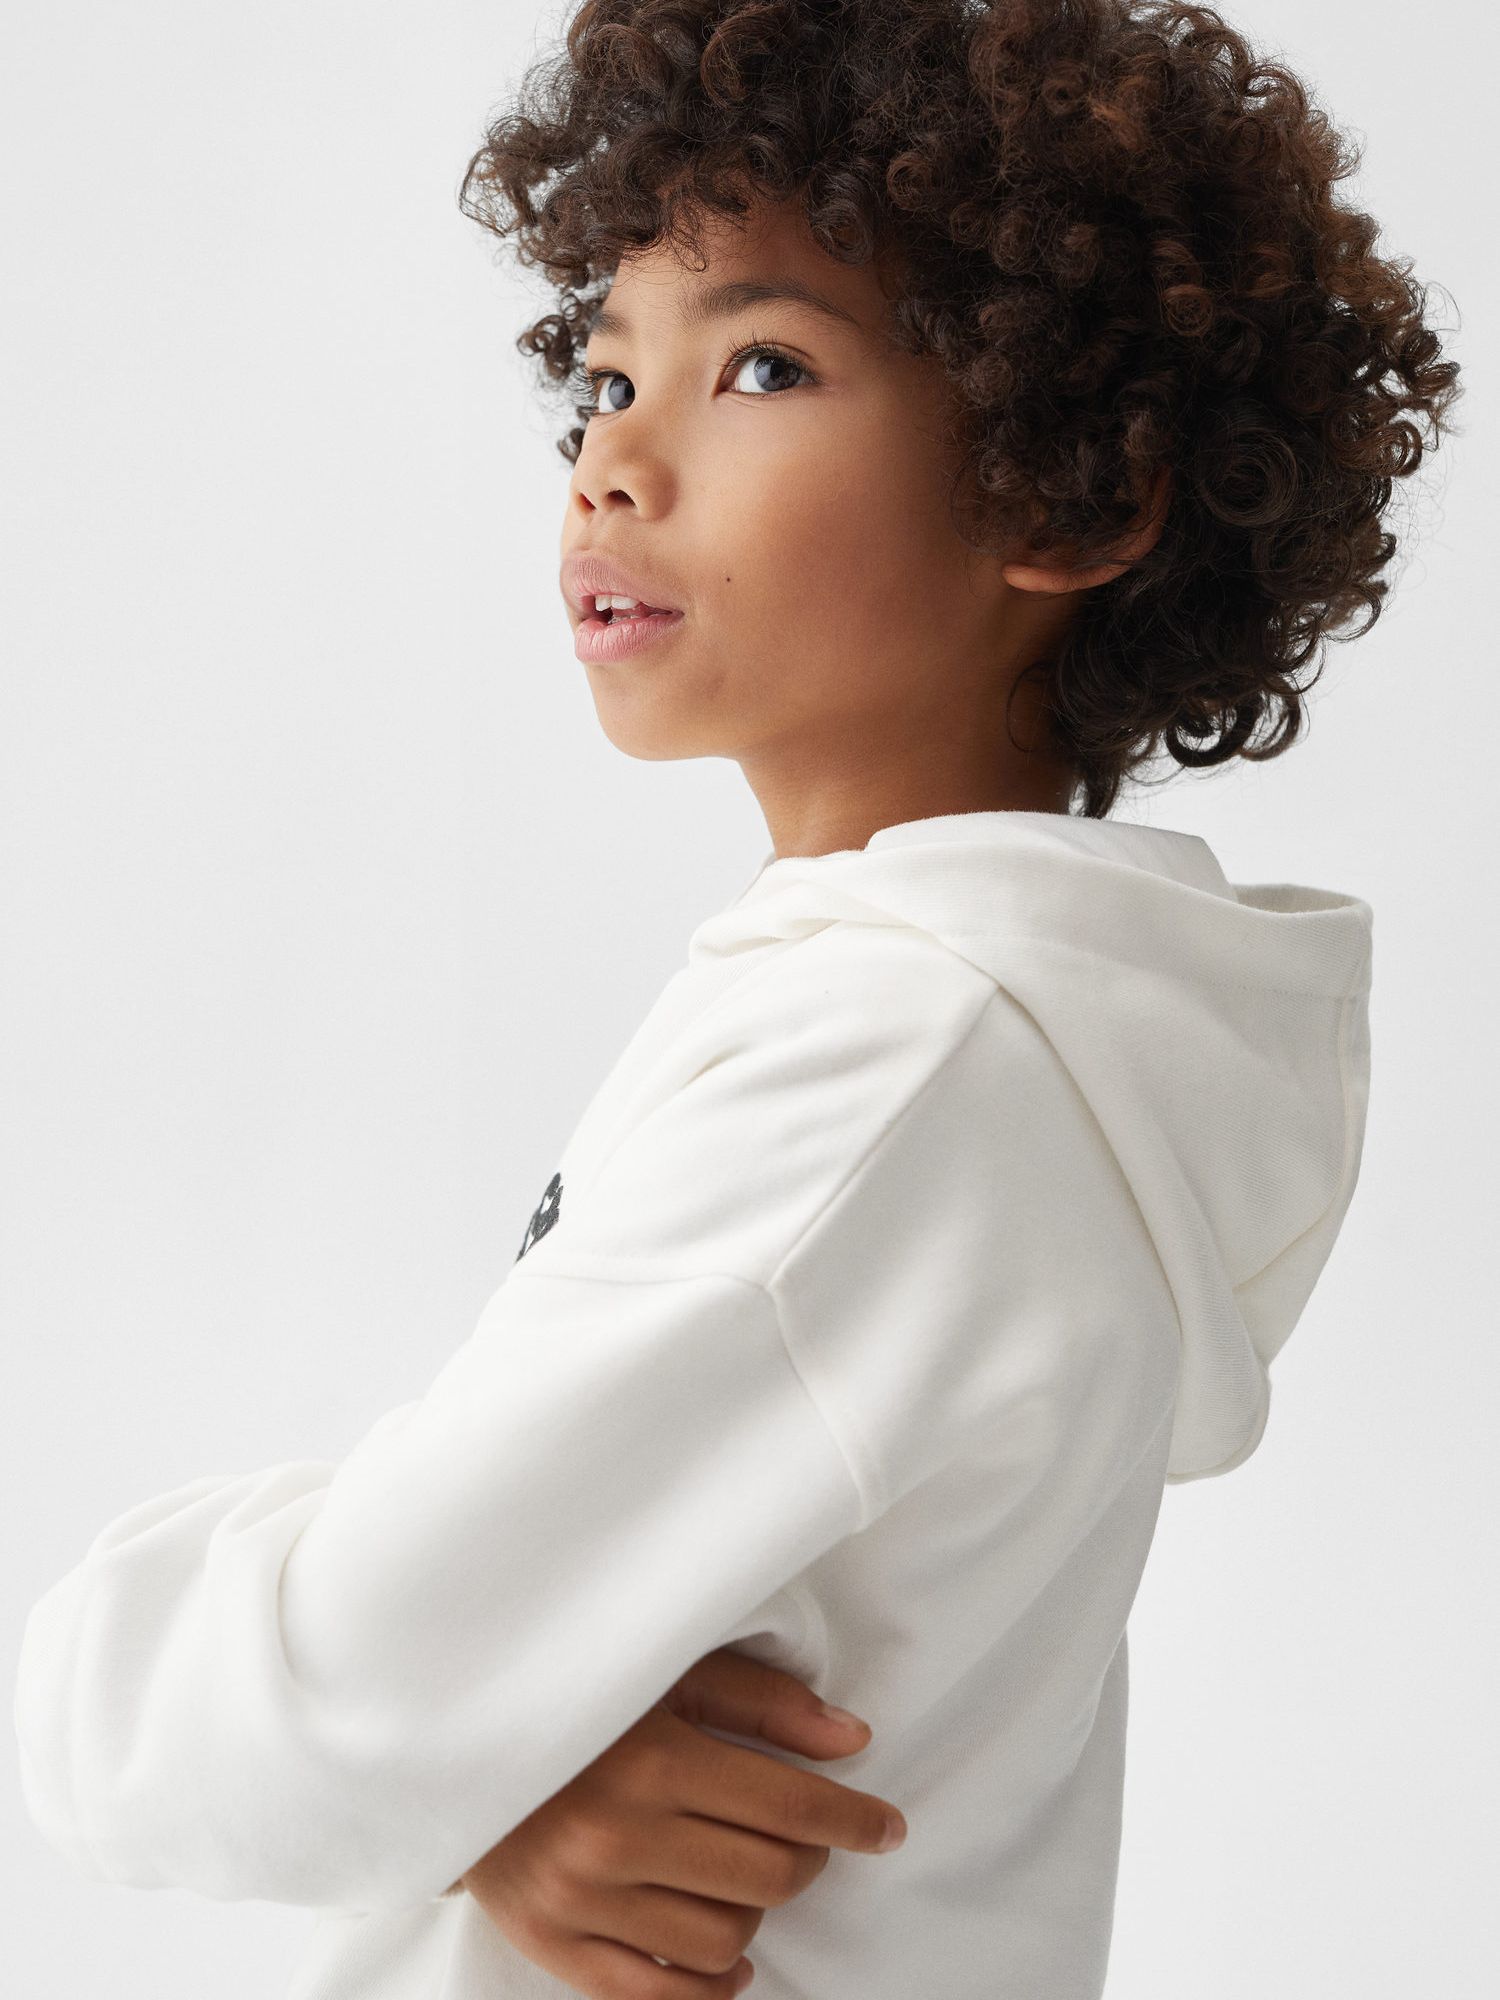 Mango Kids' Sport Print Hoodie, Natural White at John Lewis & Partners